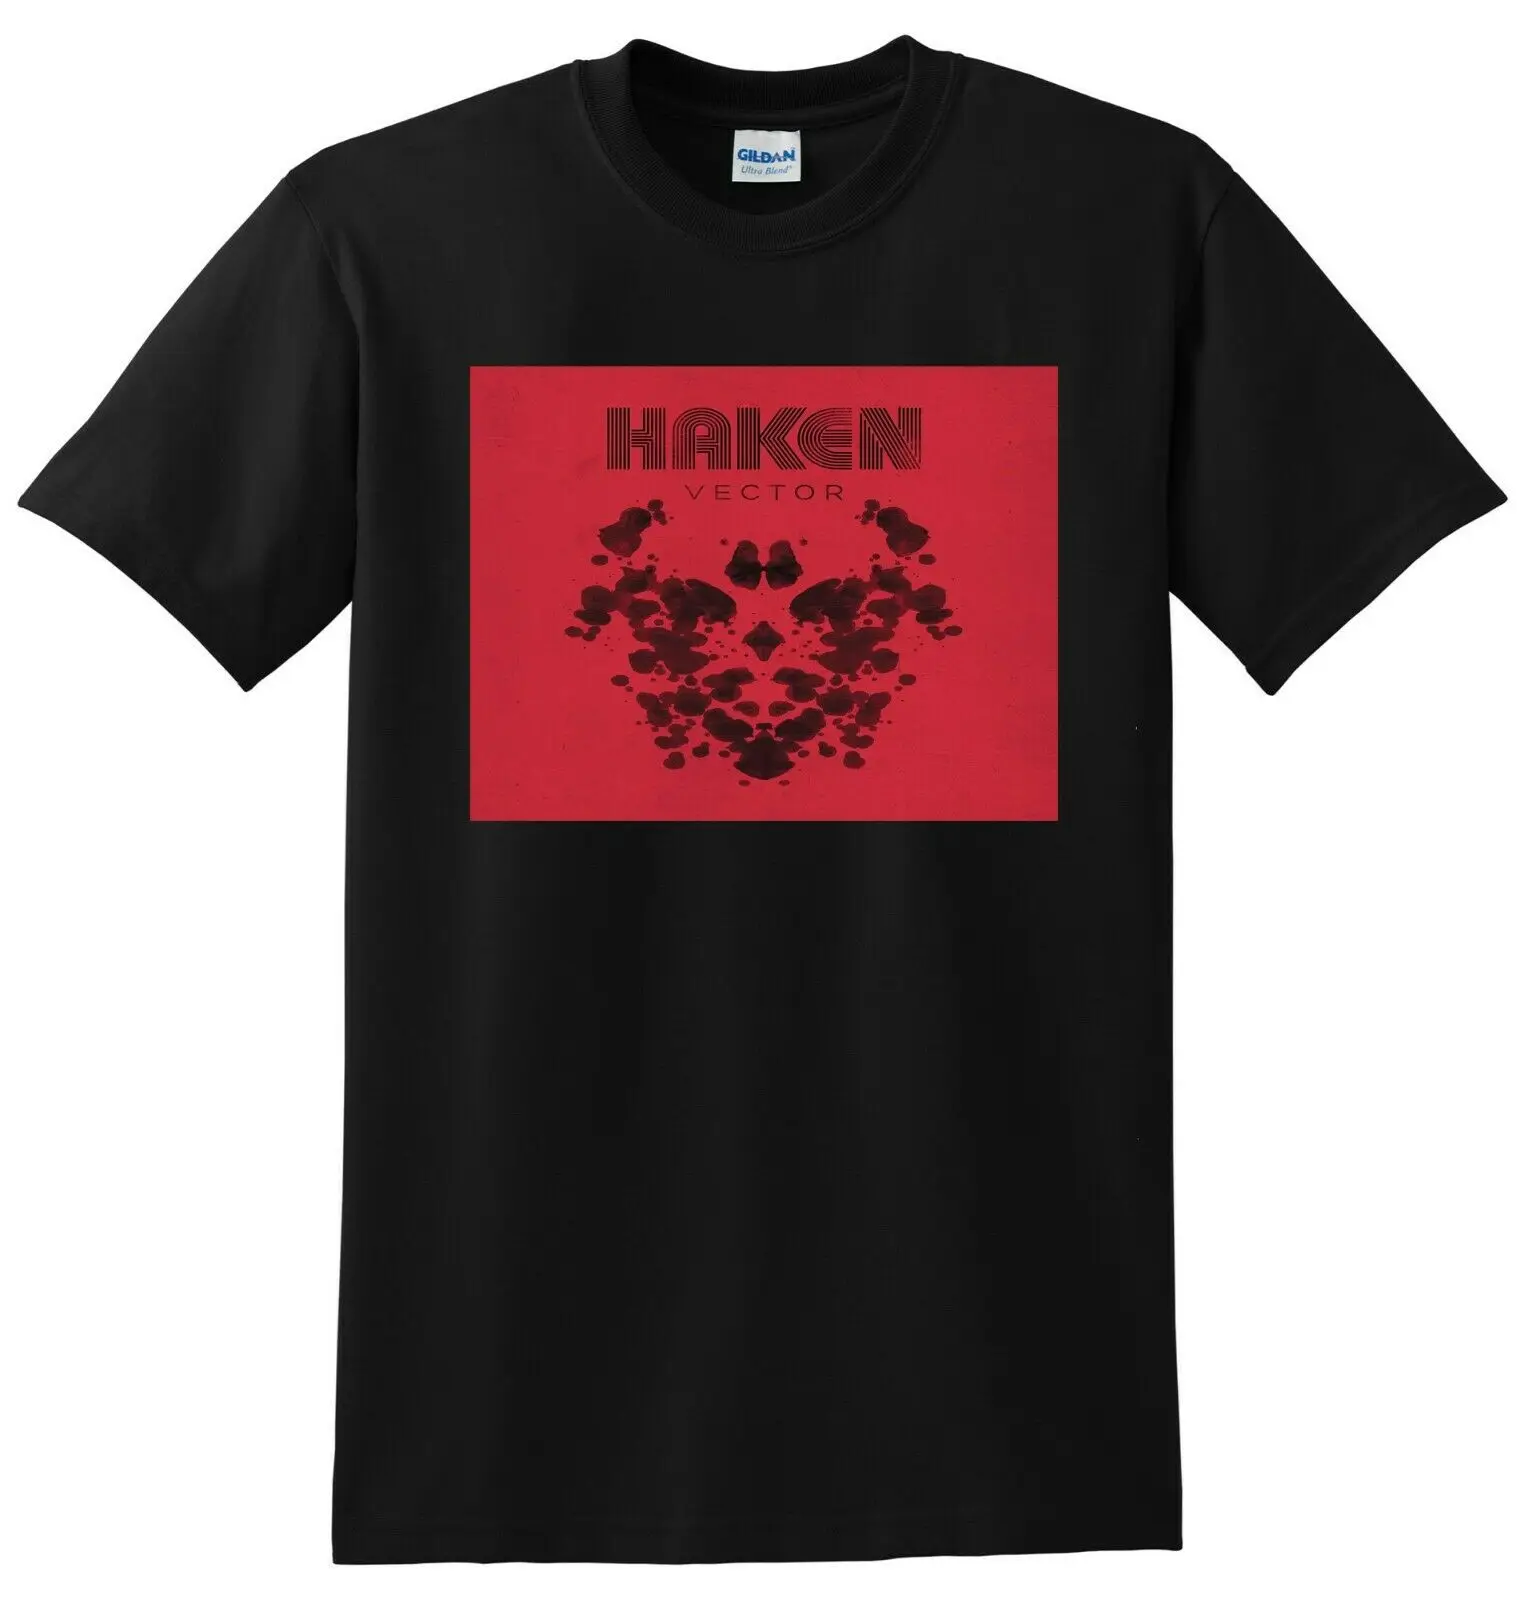 Haken T Shirt векторная виниловая обложка Cd Малый средний большой или Xl|Мужские